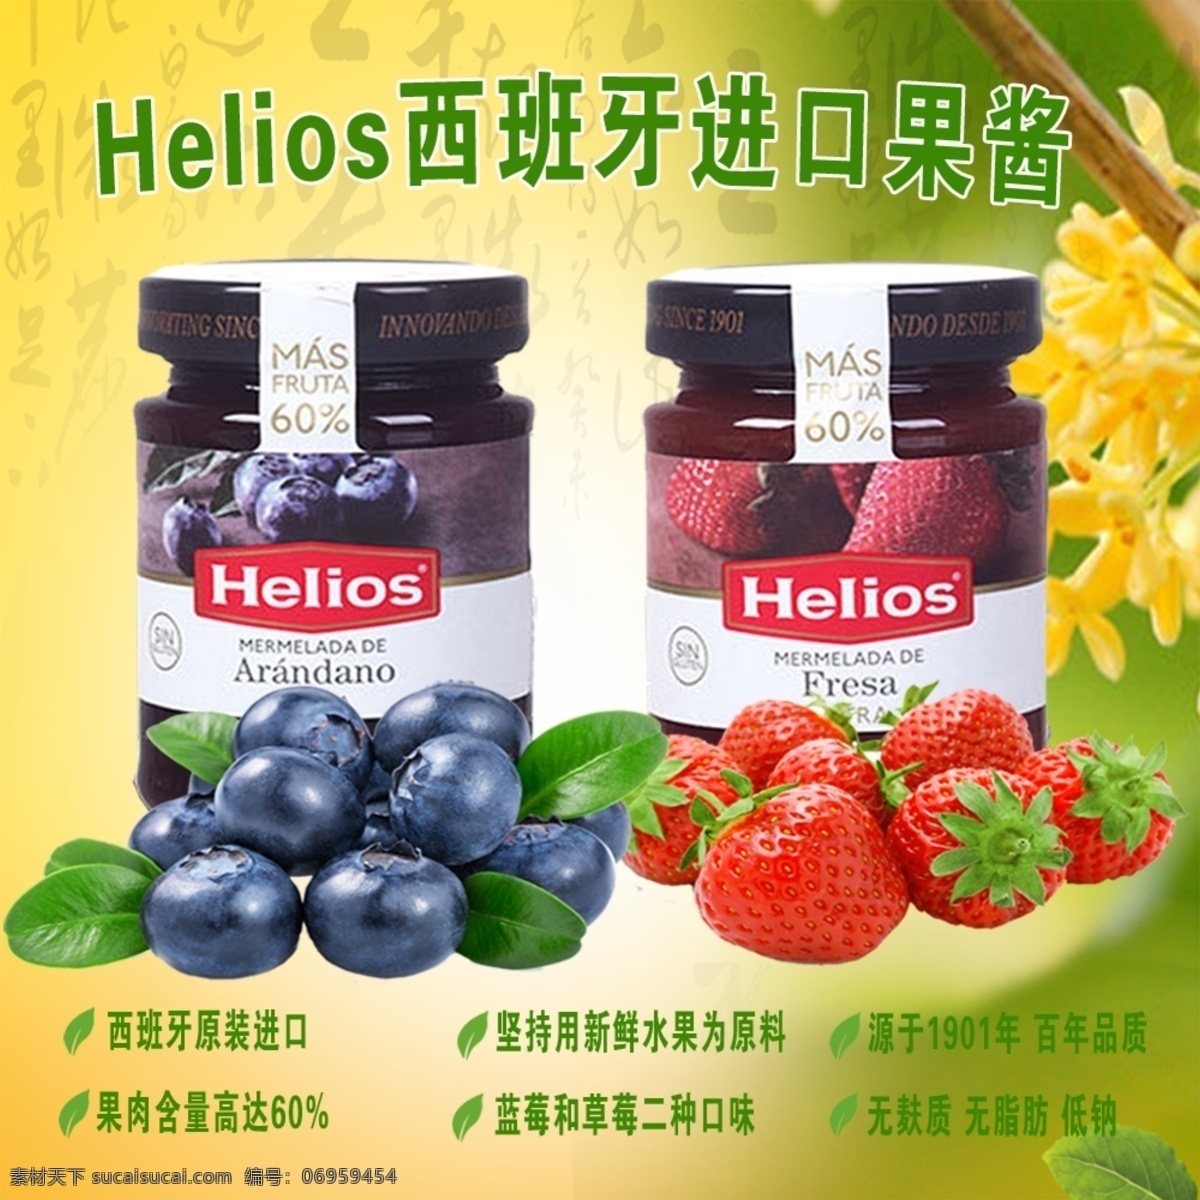 蓝莓果酱 淘宝主图 草莓果酱 中国风 黄色